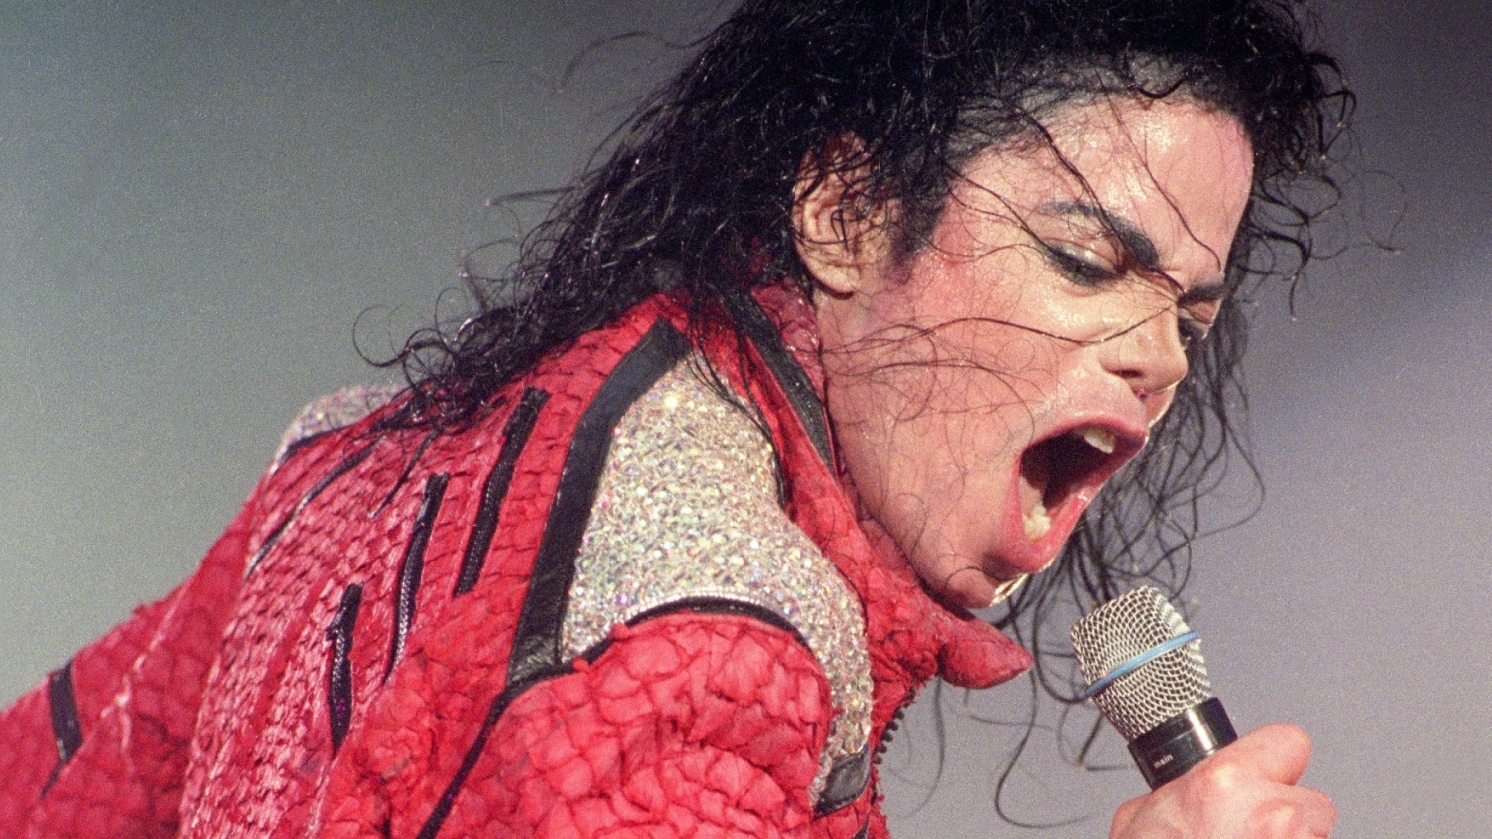 Louis Vuitton réagit à la polémique autour de Michael Jackson